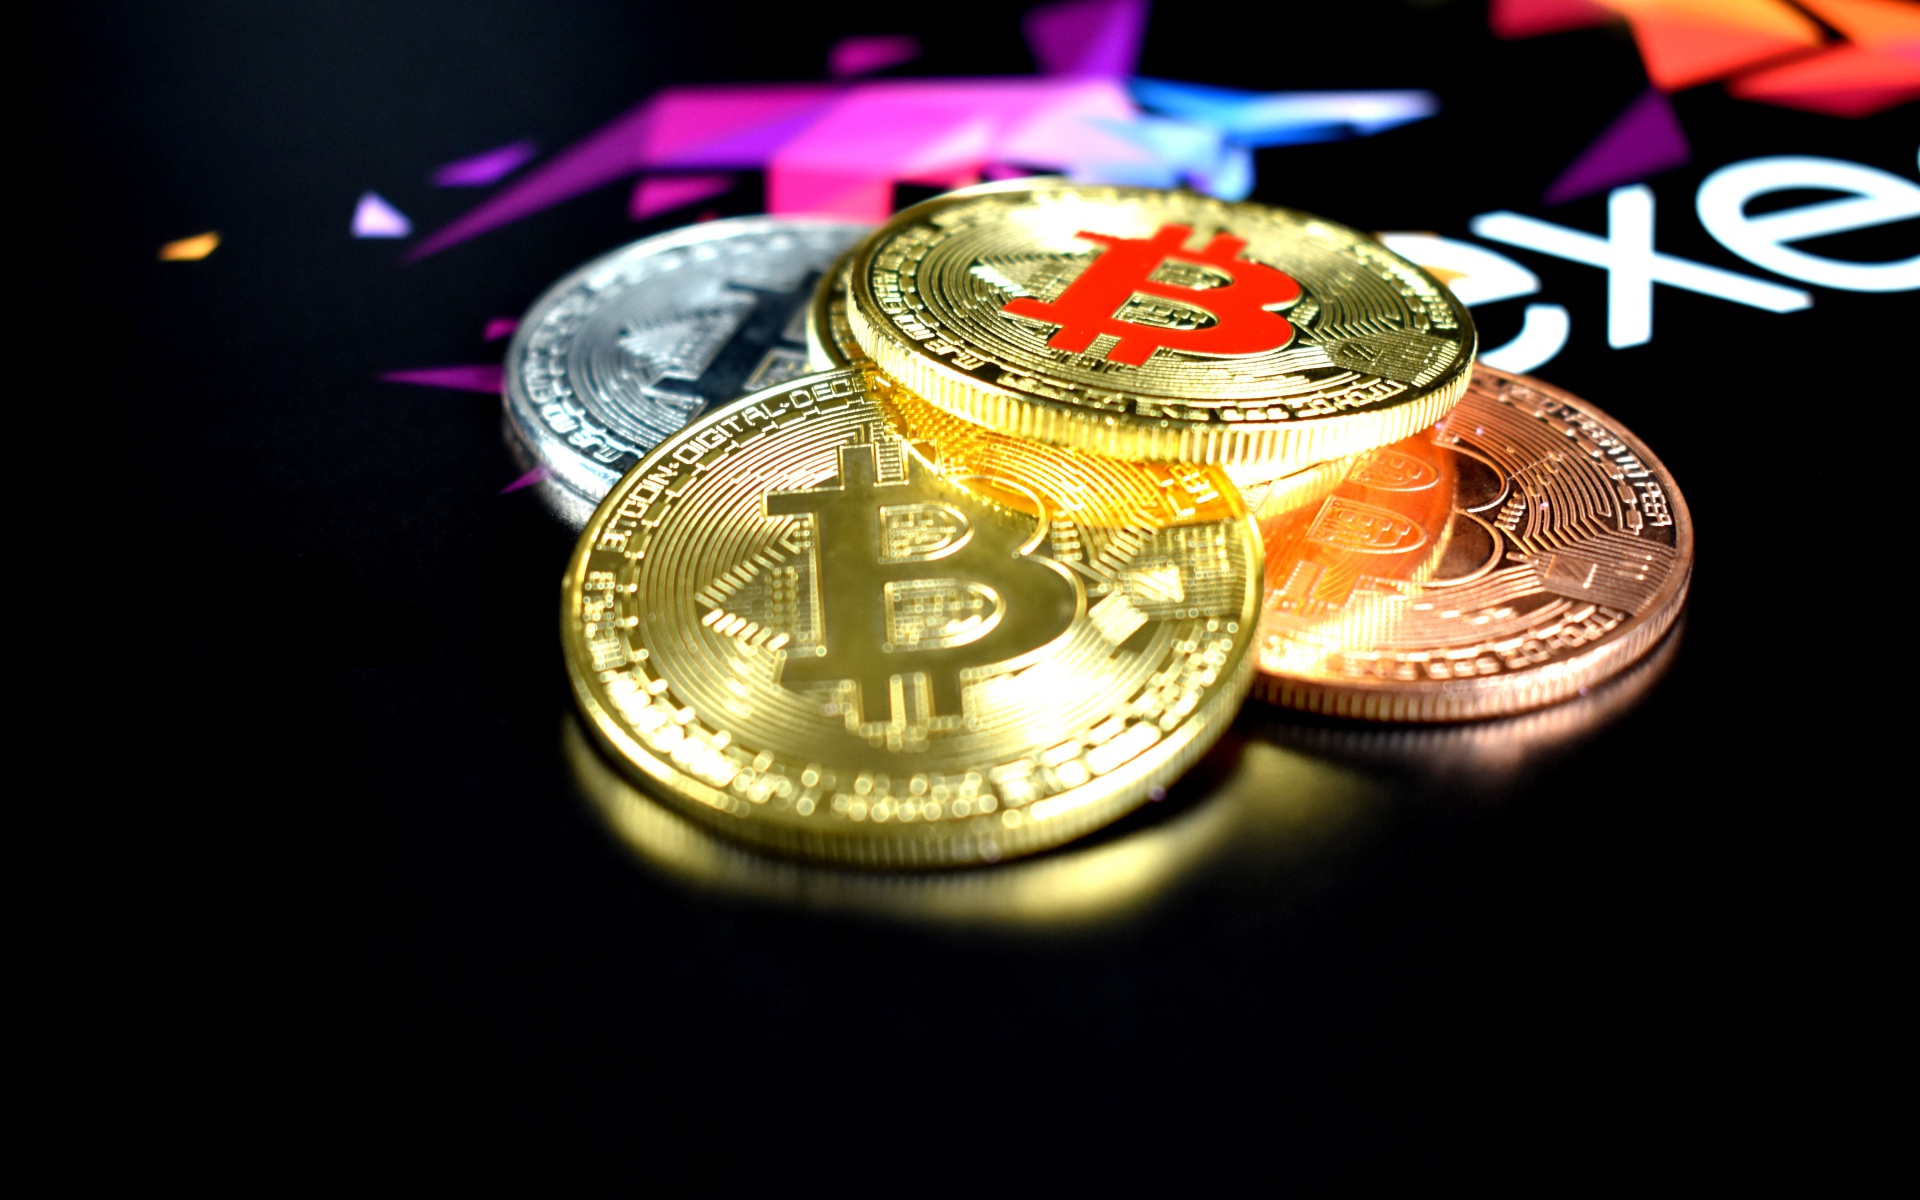 Bitcoin coins on black table